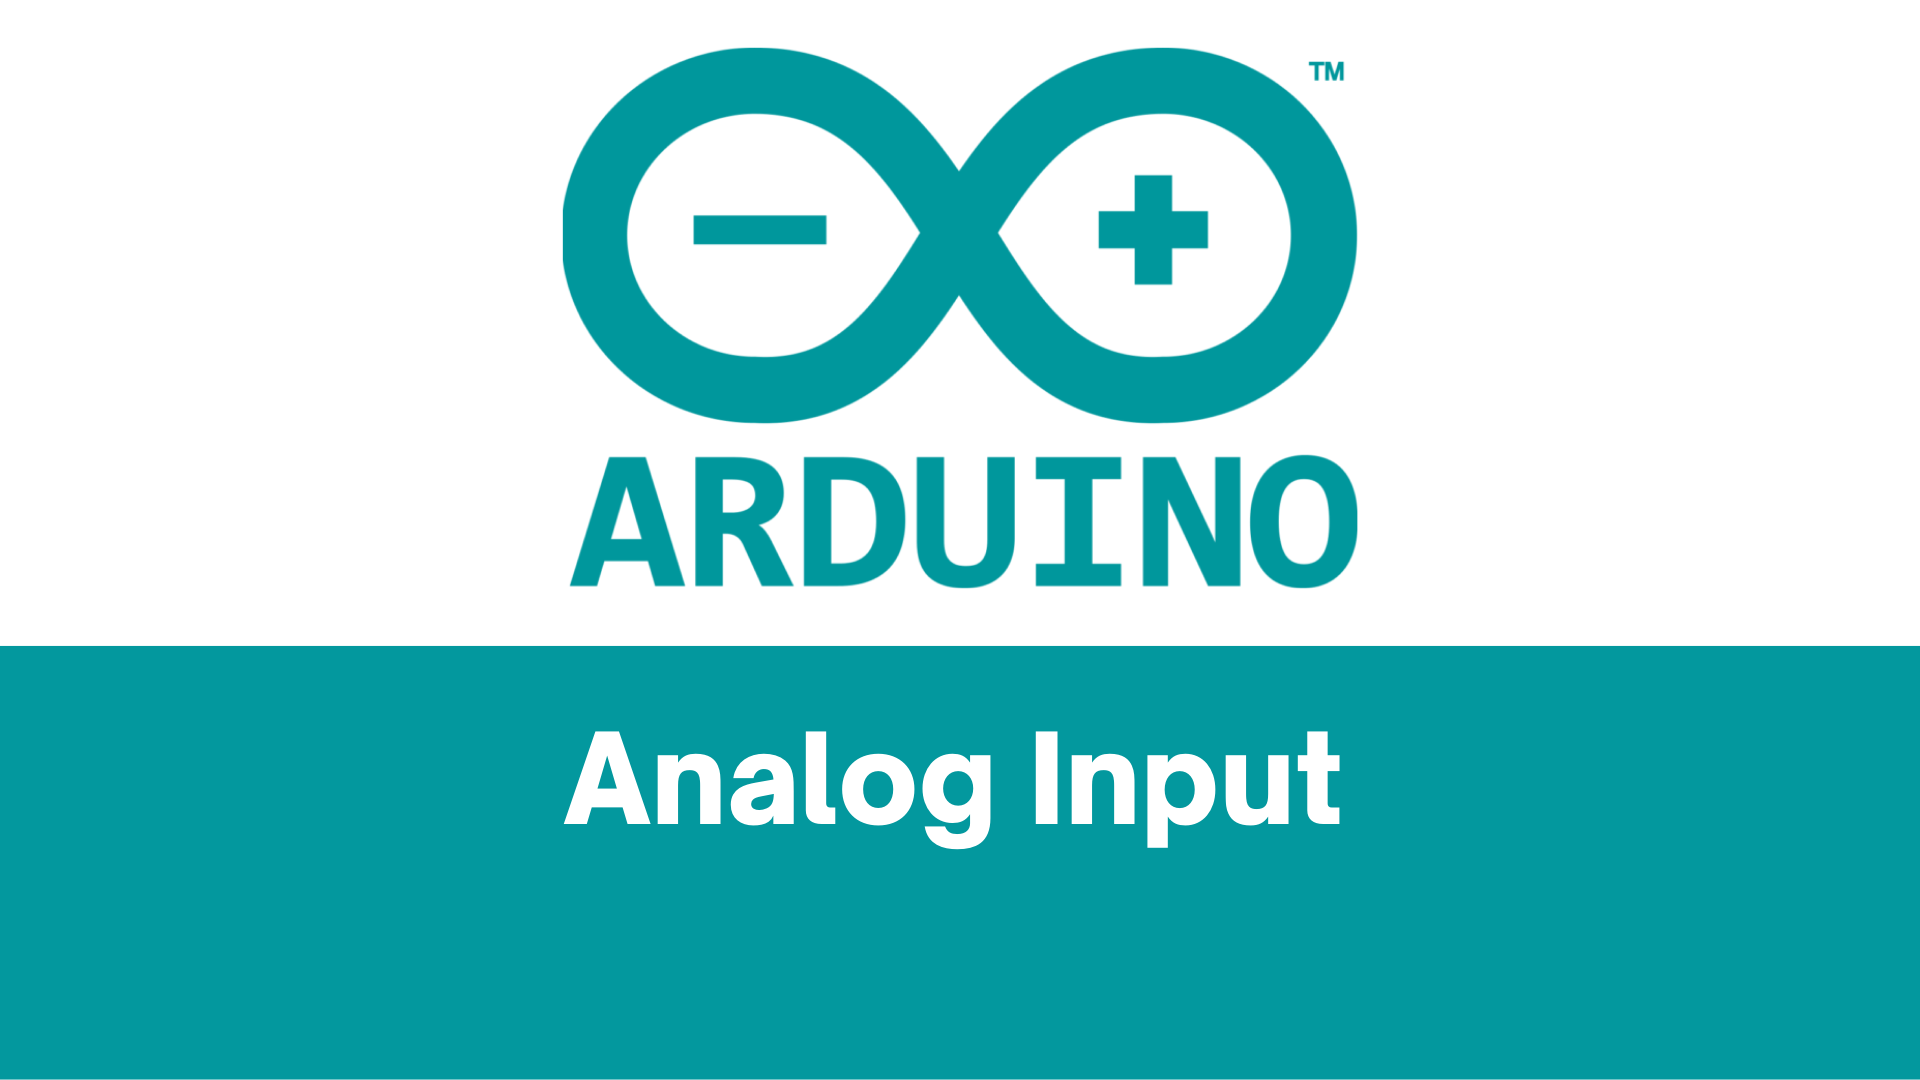 Analog Input using Arduino